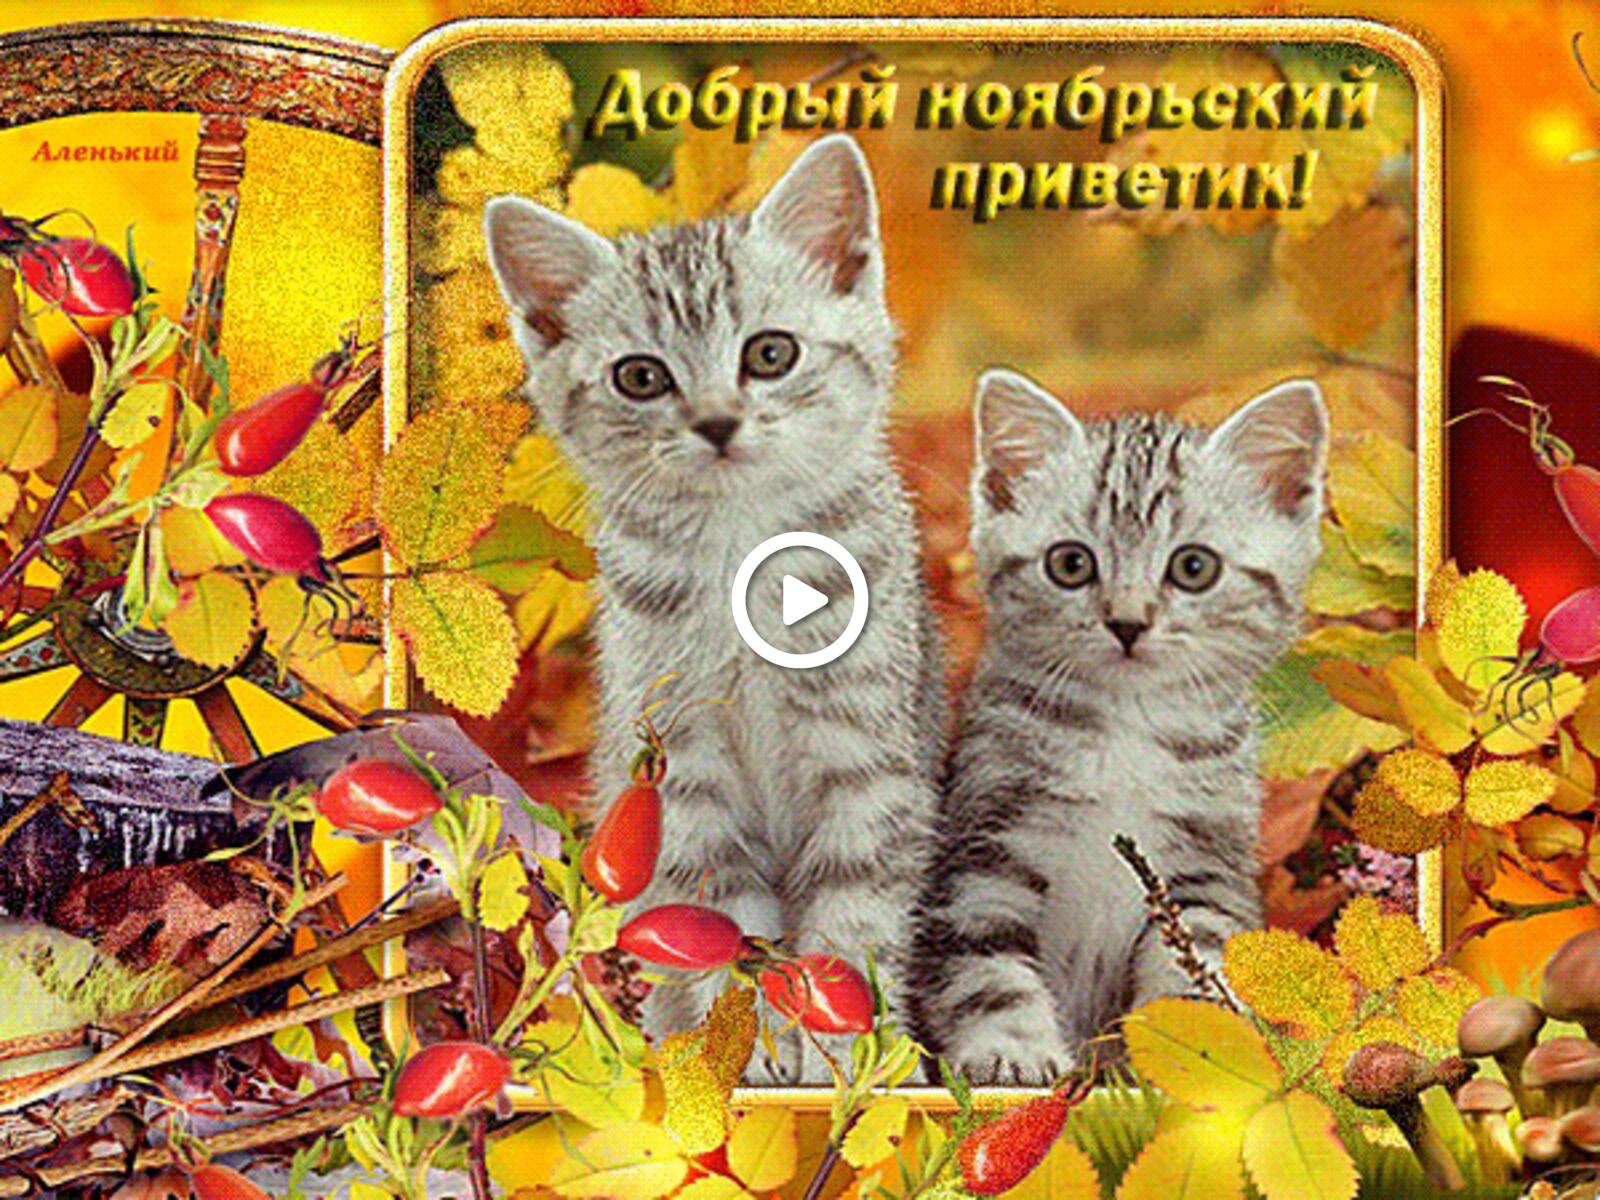 Открытка на тему добрый ноябрьский приветик листья осень бесплатно